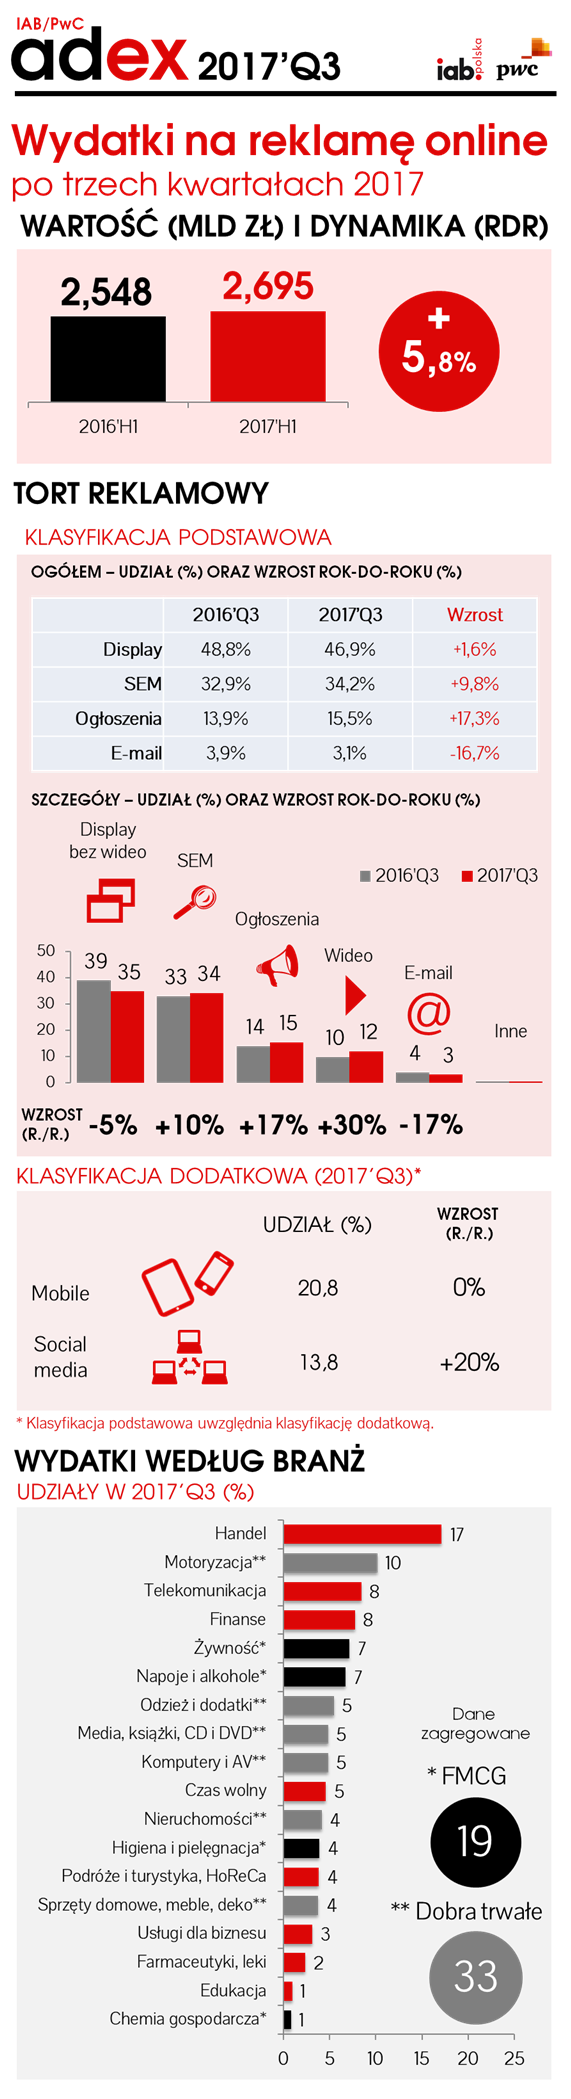 Wydatki na reklamę cyfrową wyższe o 147 mln zł